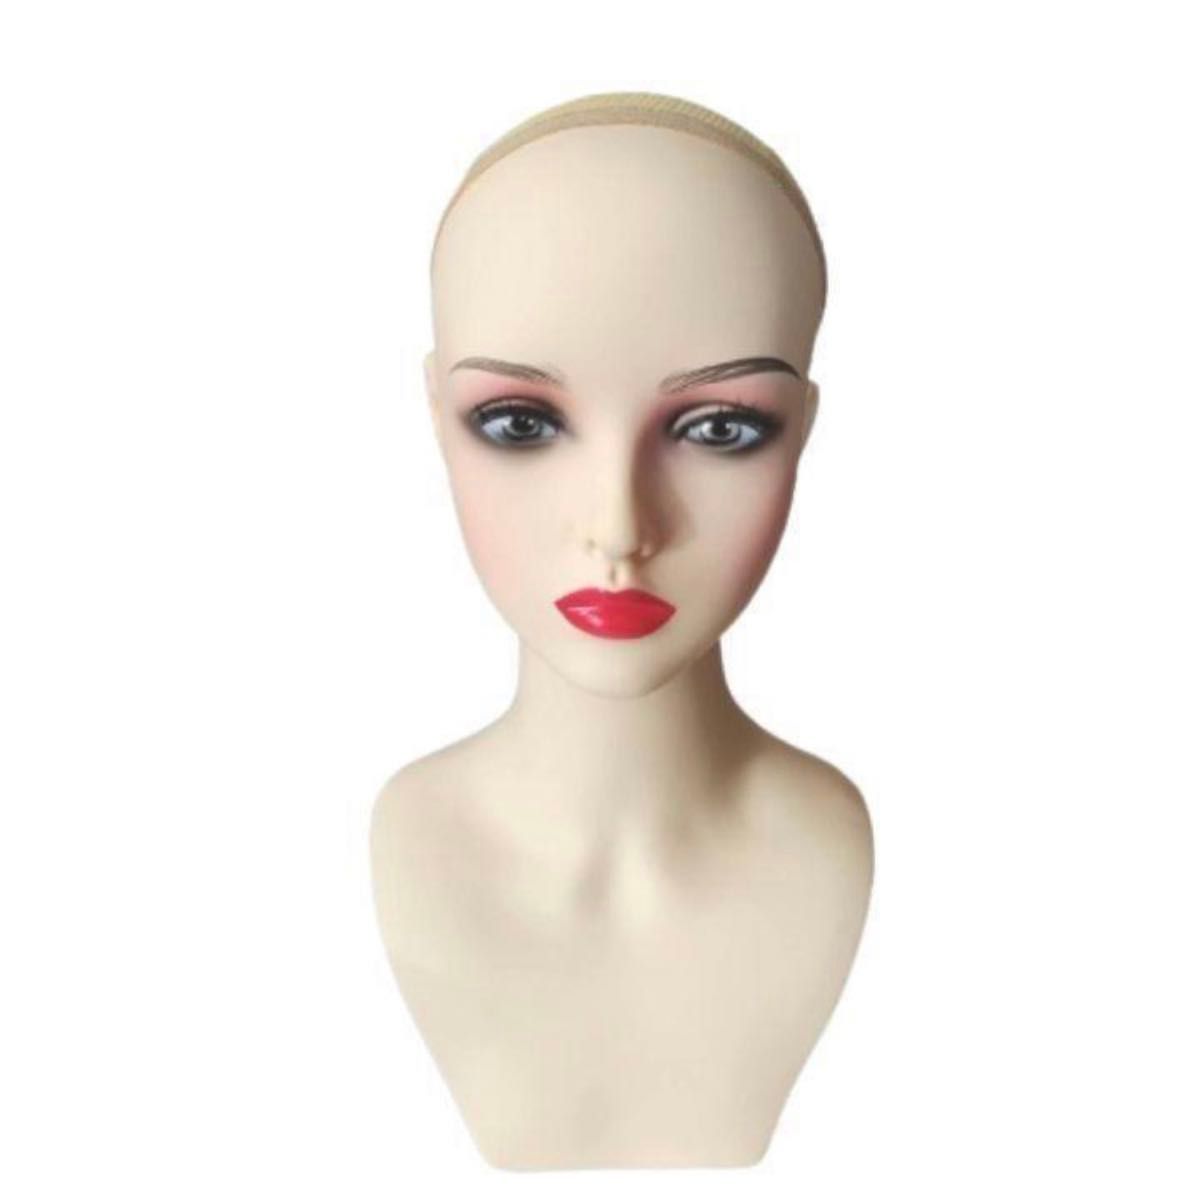 ヘッド マネキン トルソー カット練習用 頭 上半身 女性 ショップ什器 濃い顔 美容院 ハット ウィッグ スタンド 撮影用